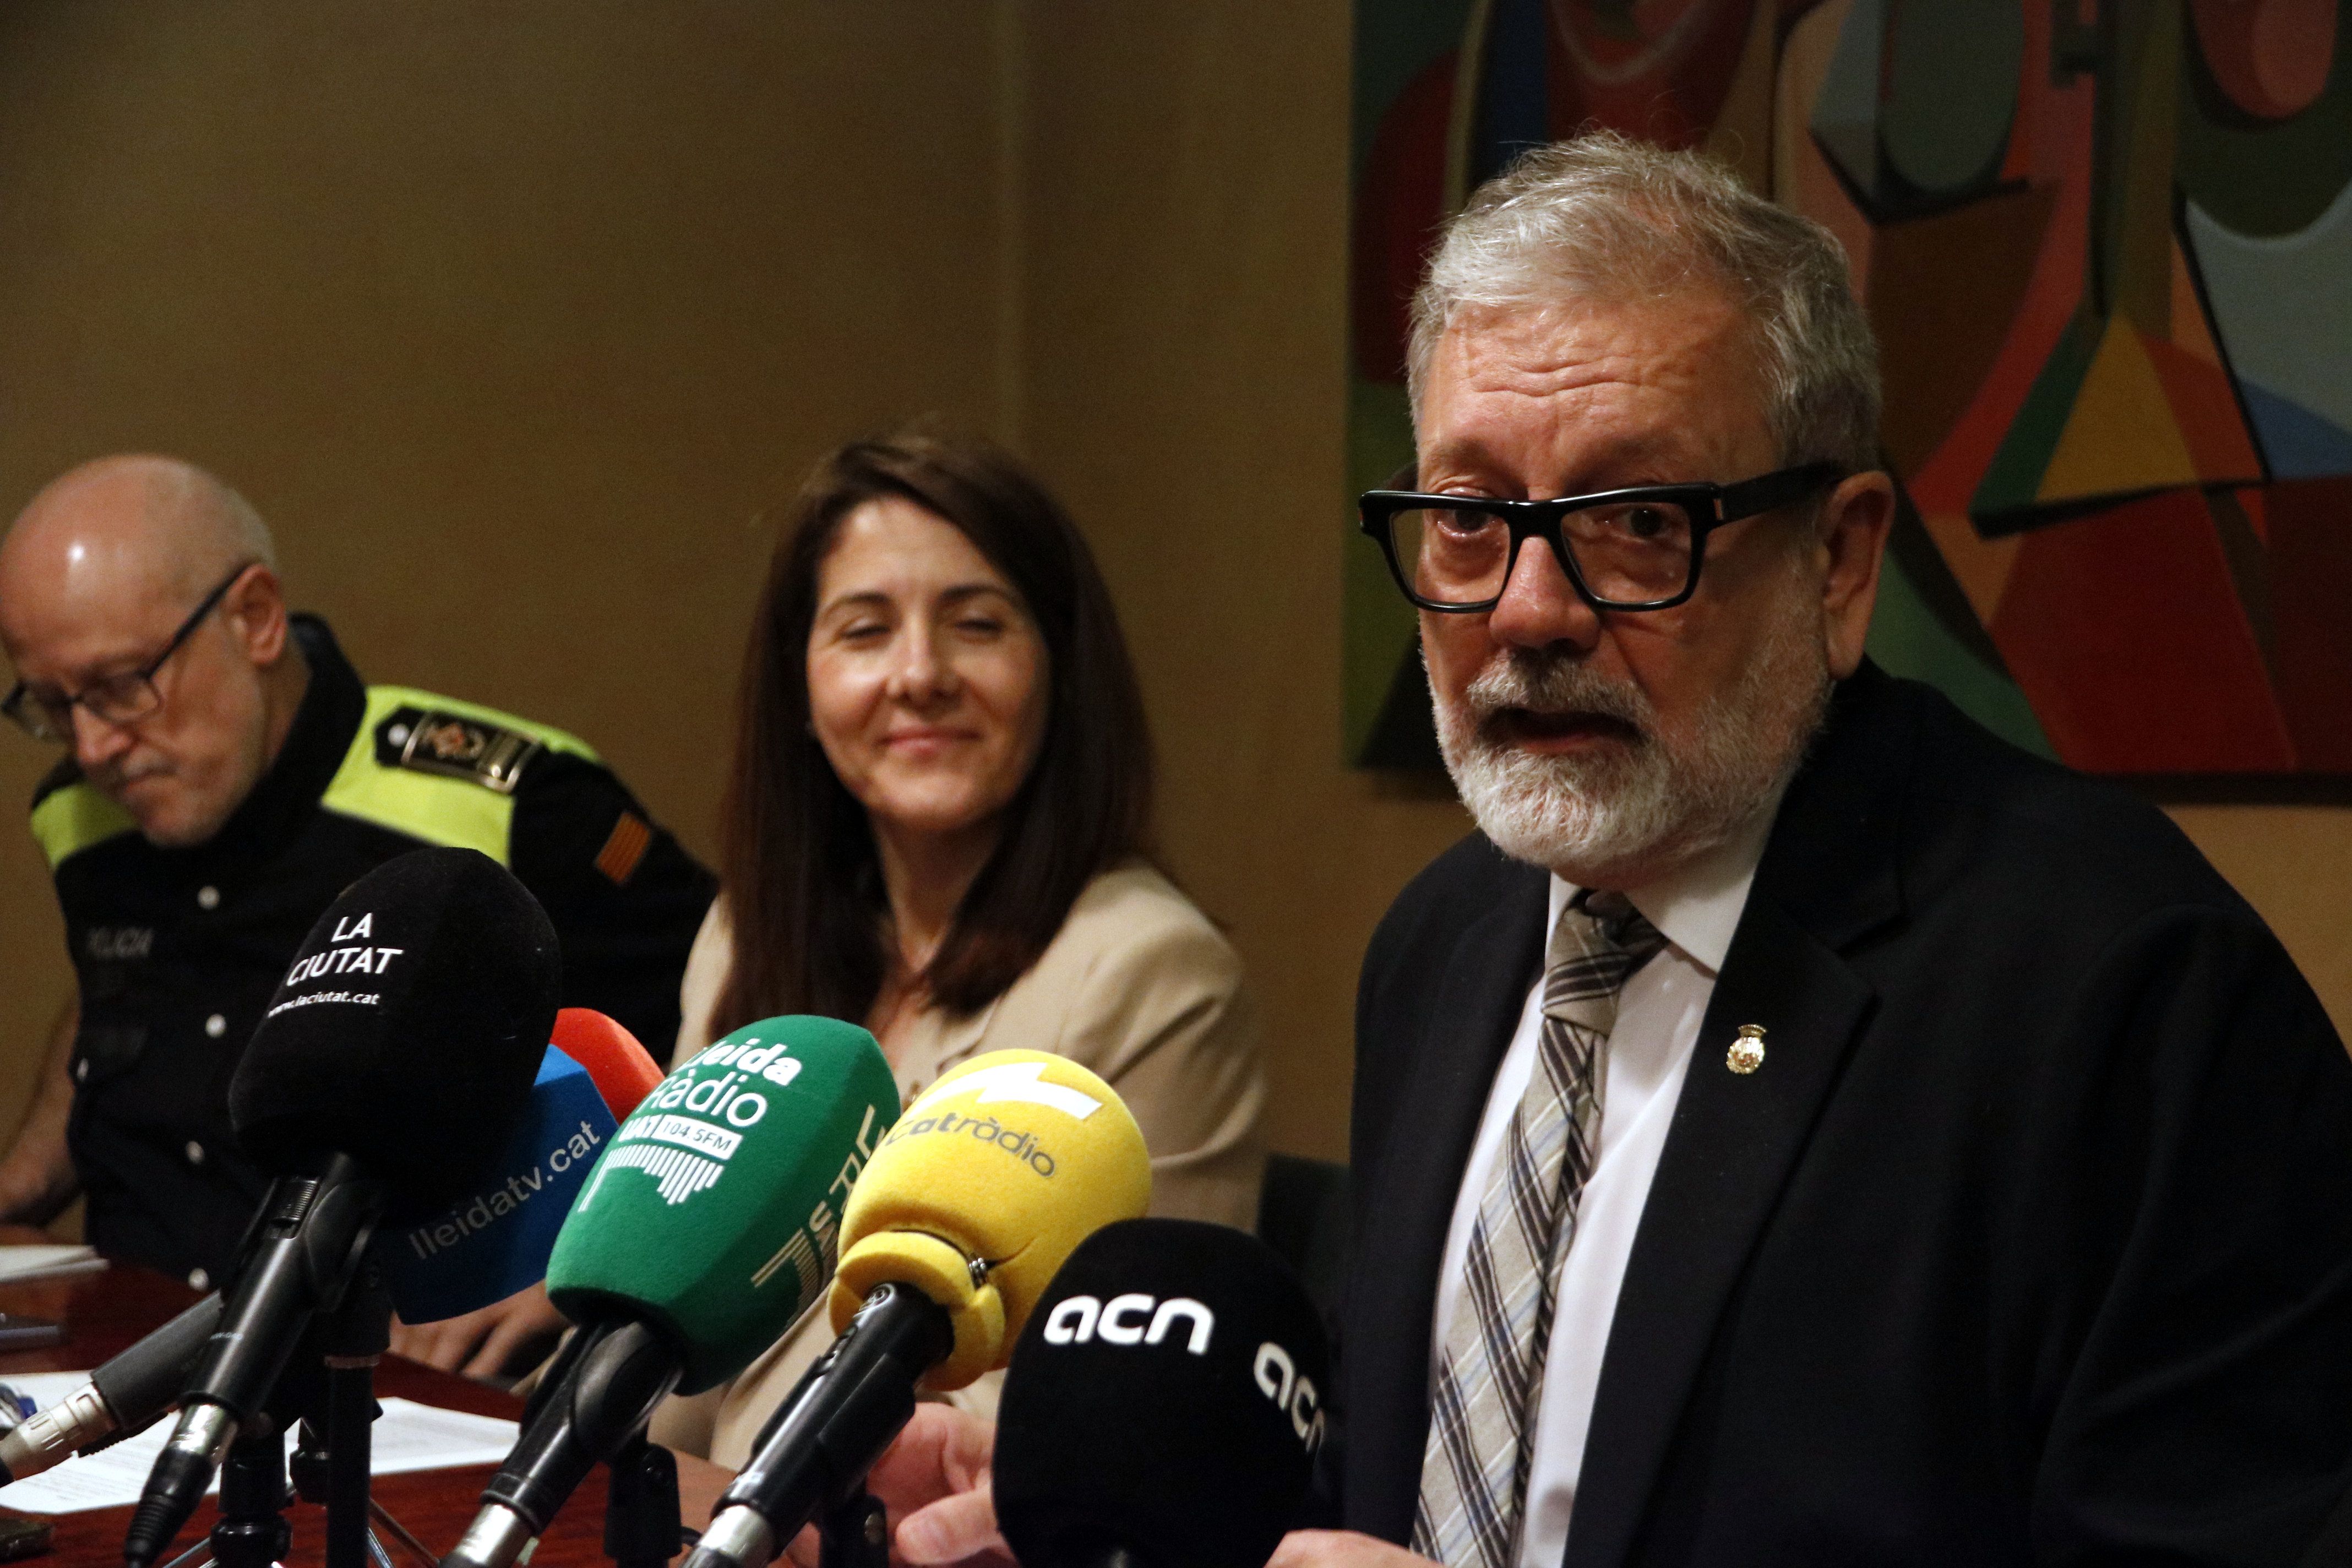 L'alcalde de Lleida, Fèlix Larrosa, presentant el concurs